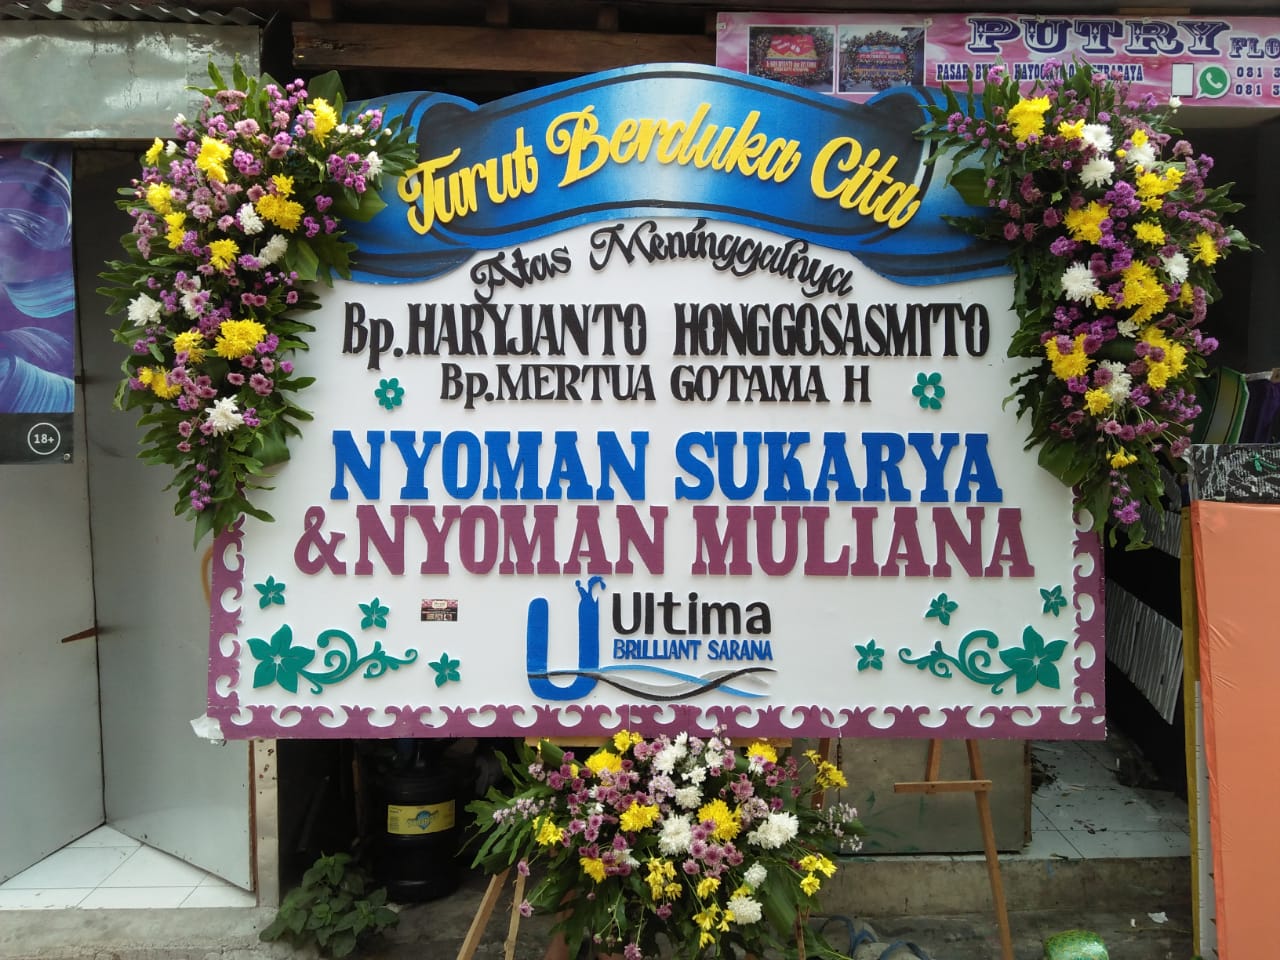 Karangan Bunga Surabaya 0821-3995-0499: Toko Bunga Termurah di Kayoon